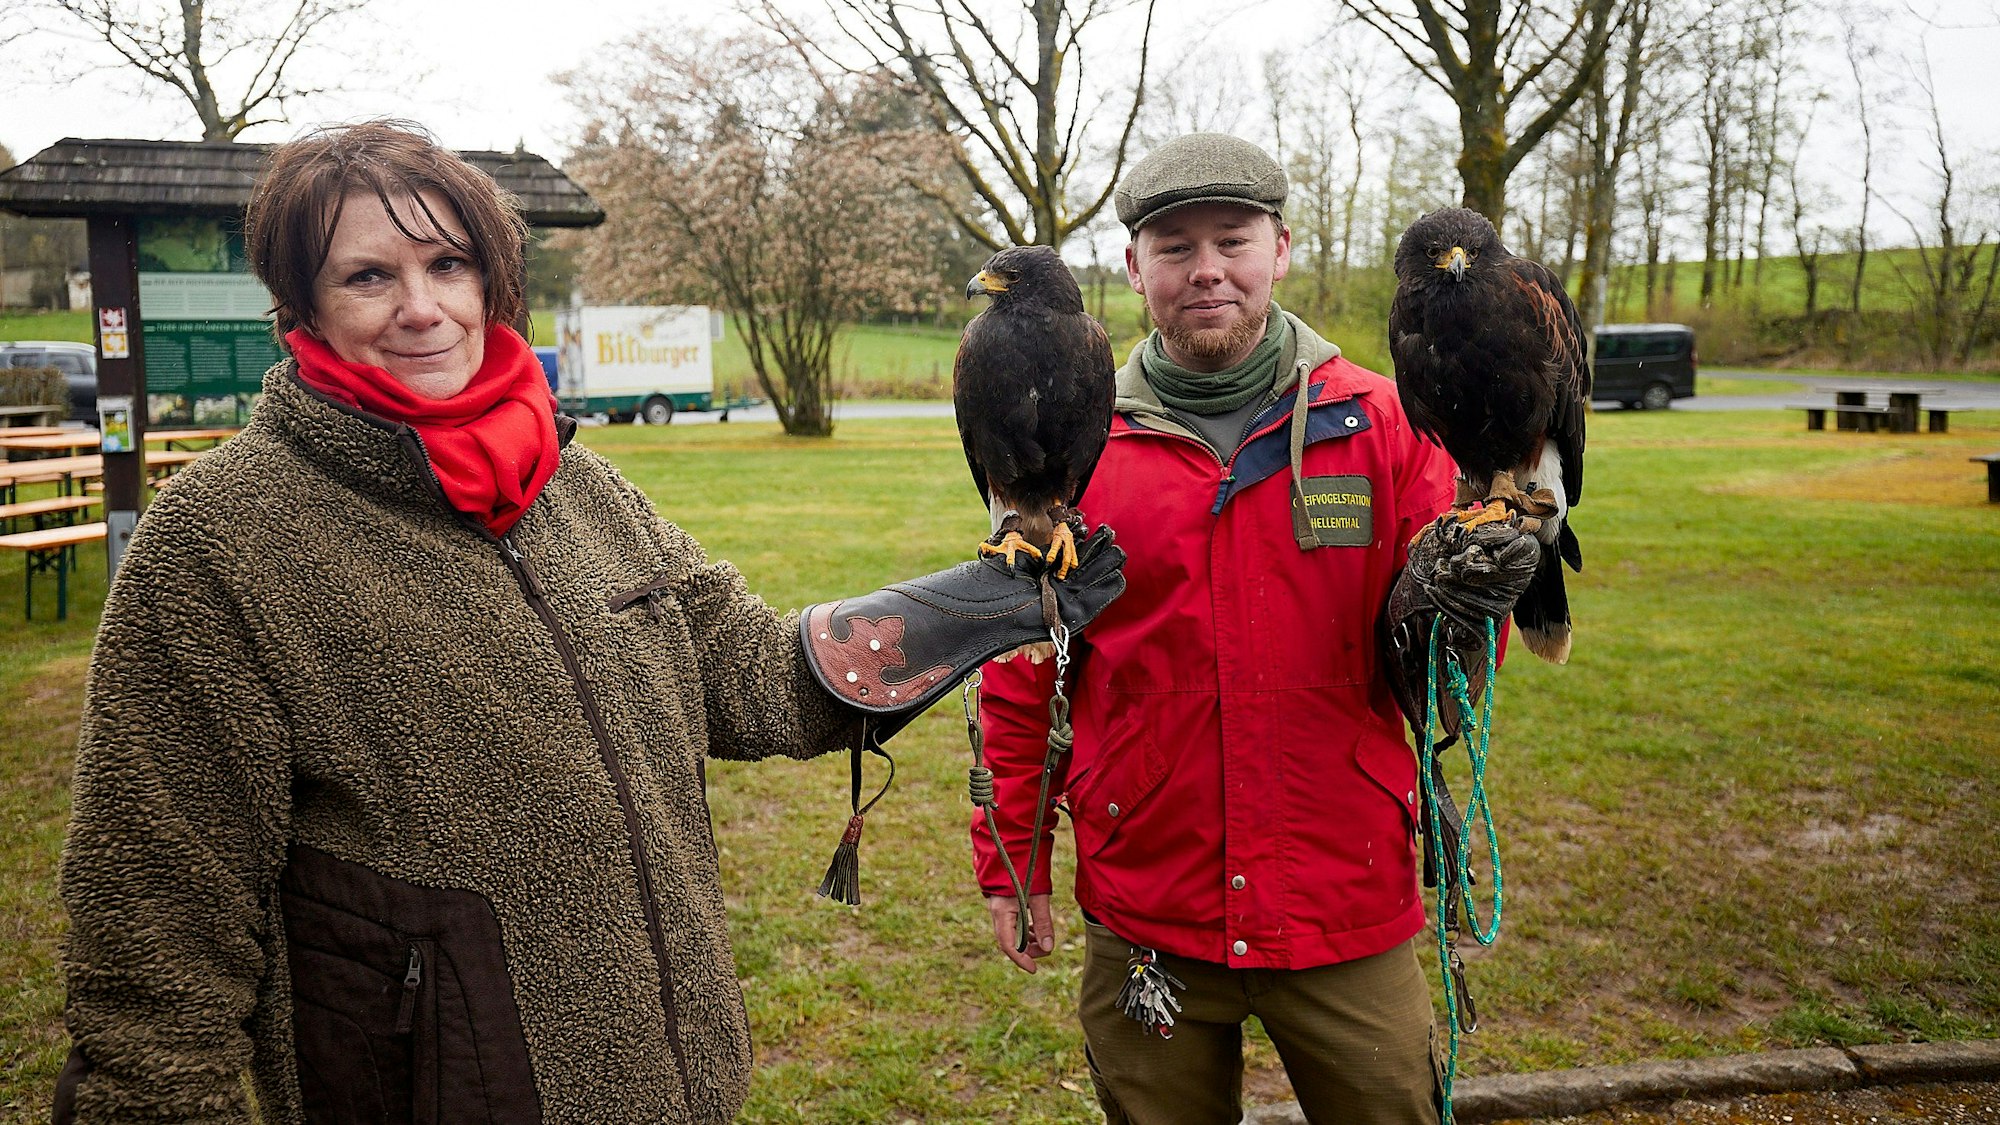 Eine Falknerin und ein Falkner halten jeweils einen Greifvogel auf der ausgestreckten Hand.